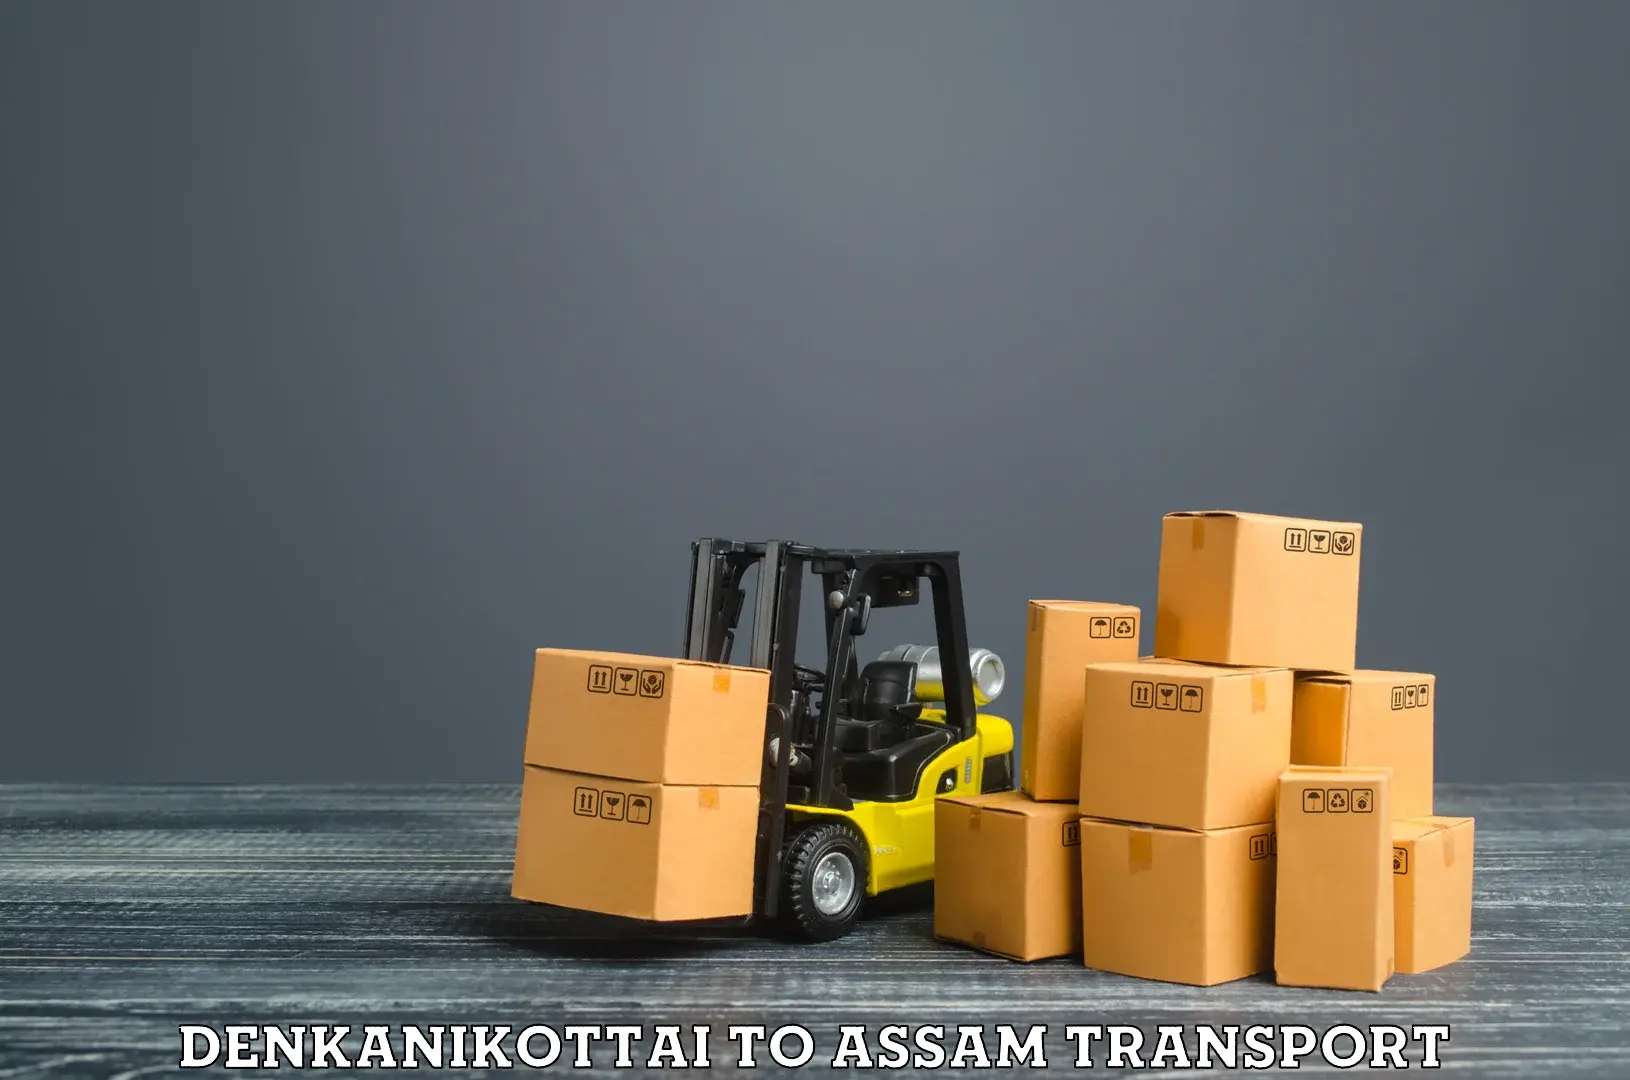 Cargo train transport services Denkanikottai to Mirza Kamrup